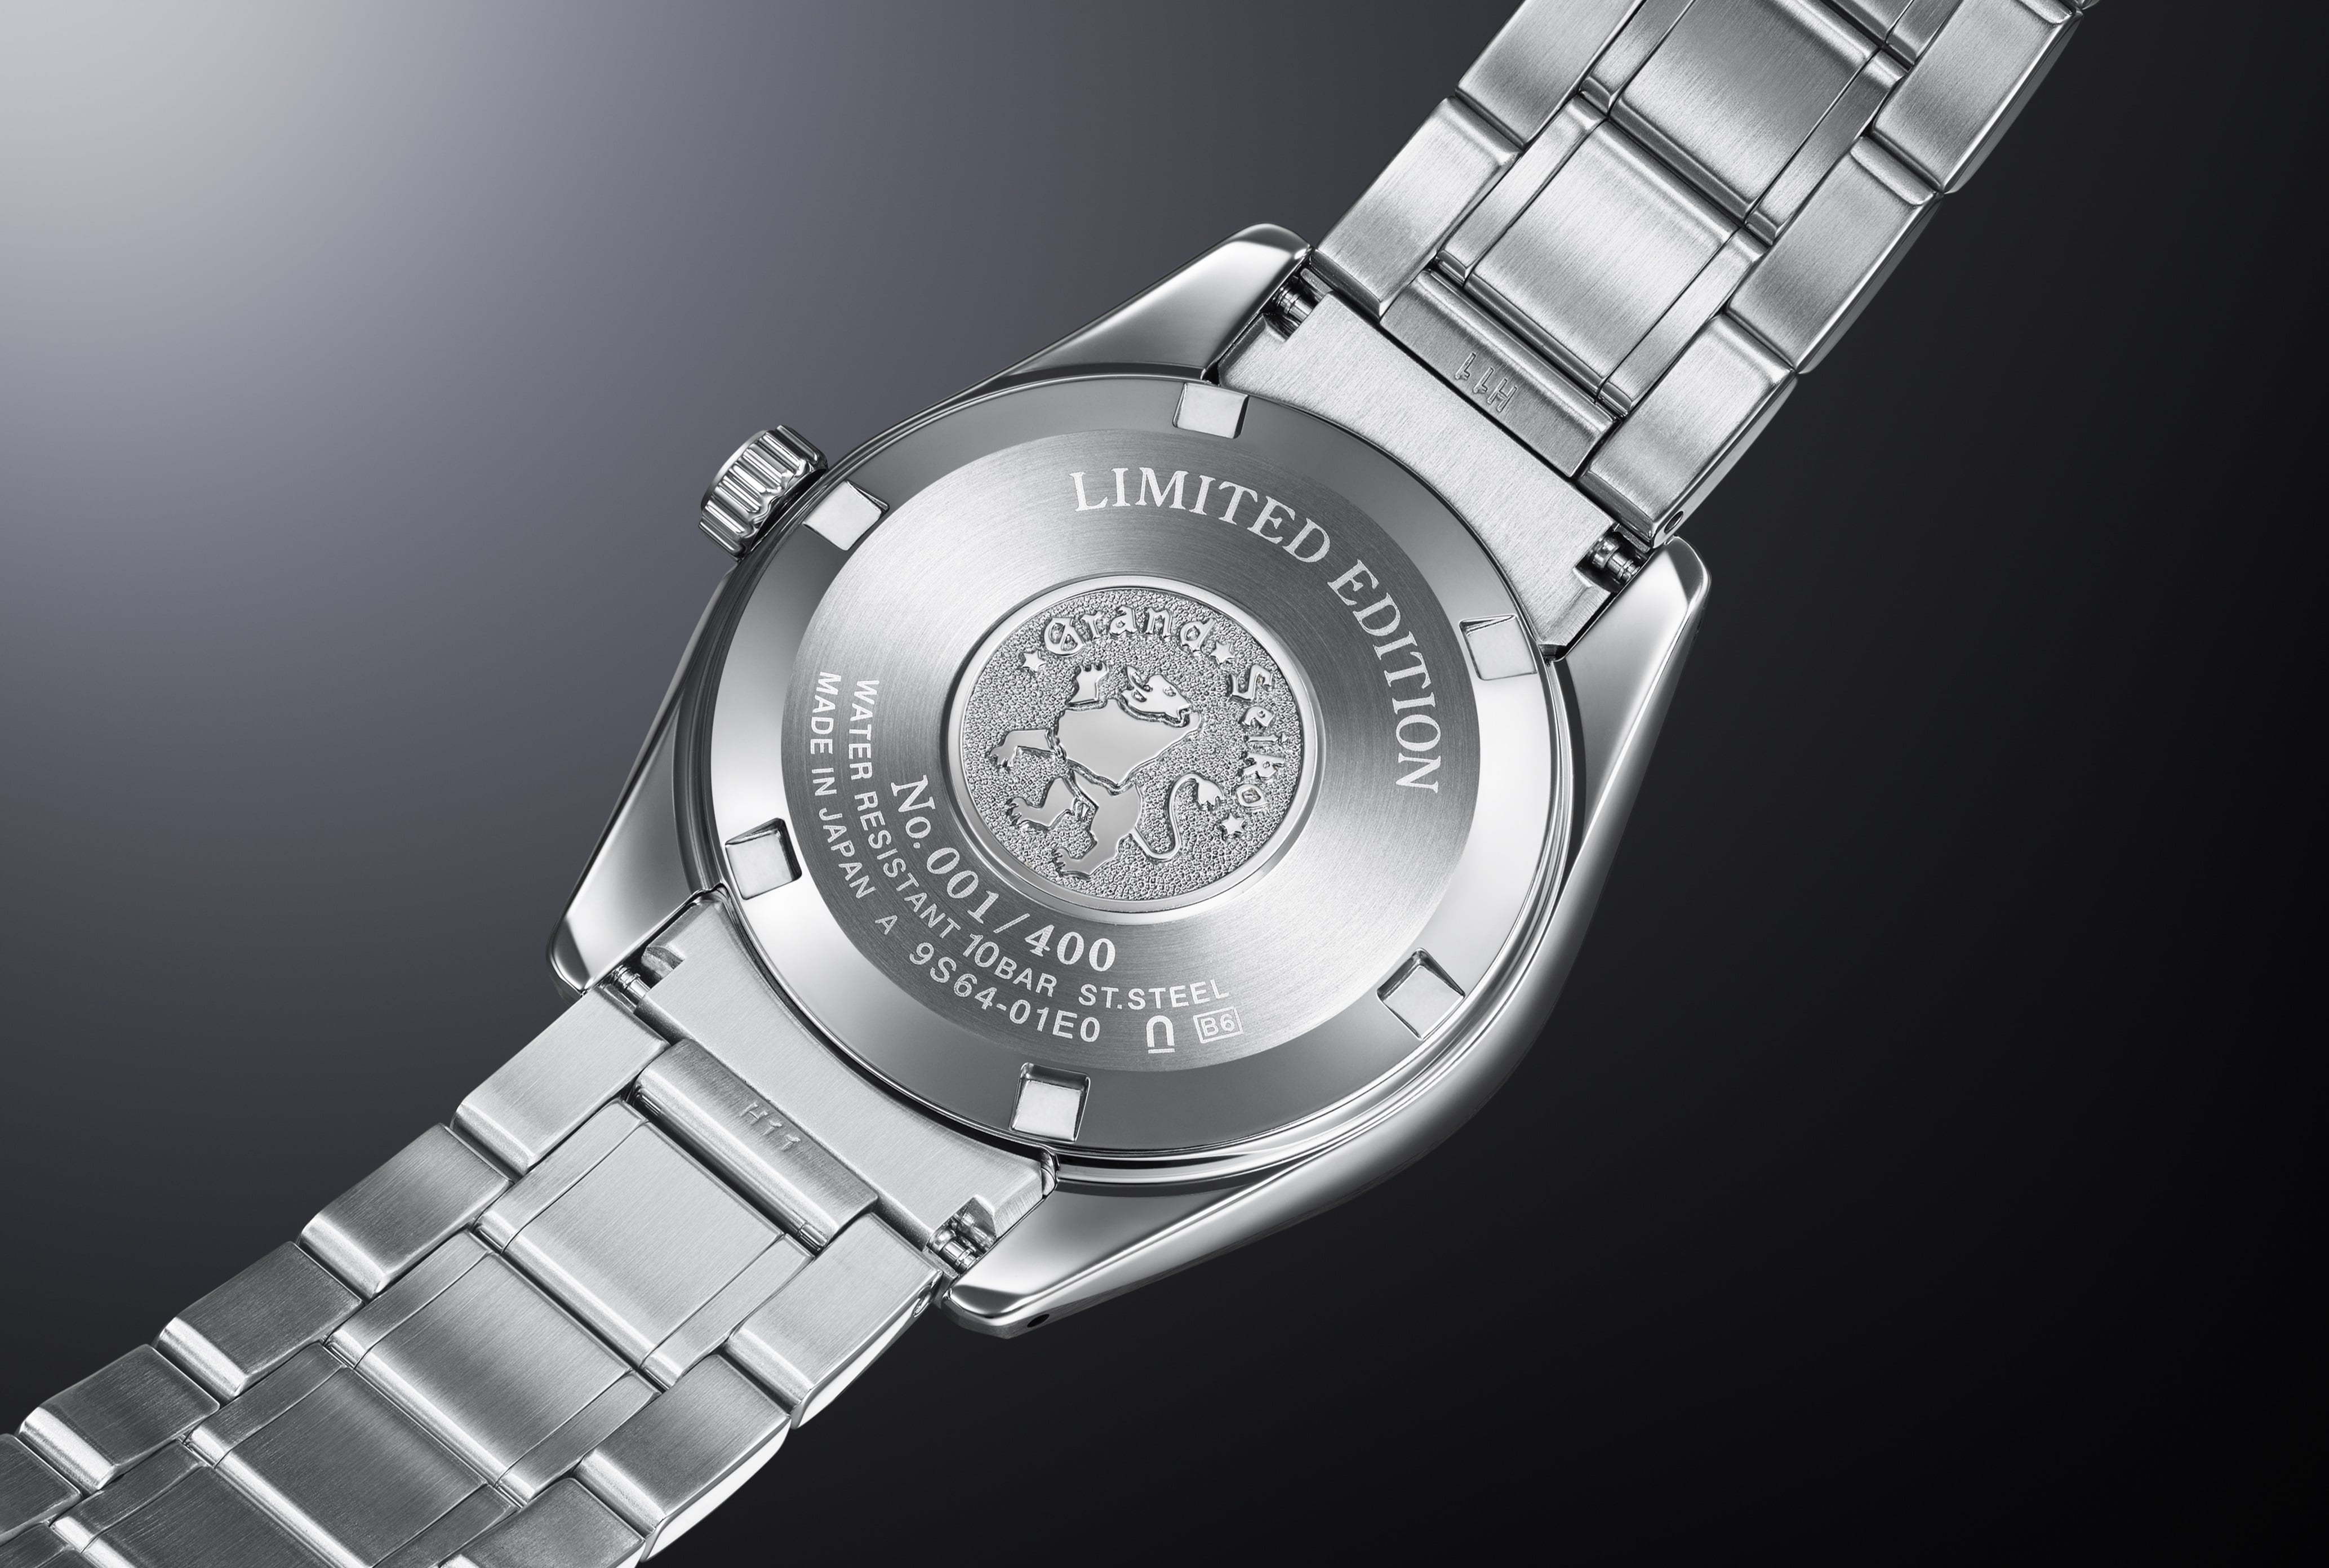 Gehäuseboden der Grand Seiko SBGW303 aus Edelstahl. Abgebildet ist auch die Nummerierung und Limitierung dieser nur für den europäischen Markt produzierten Uhr.